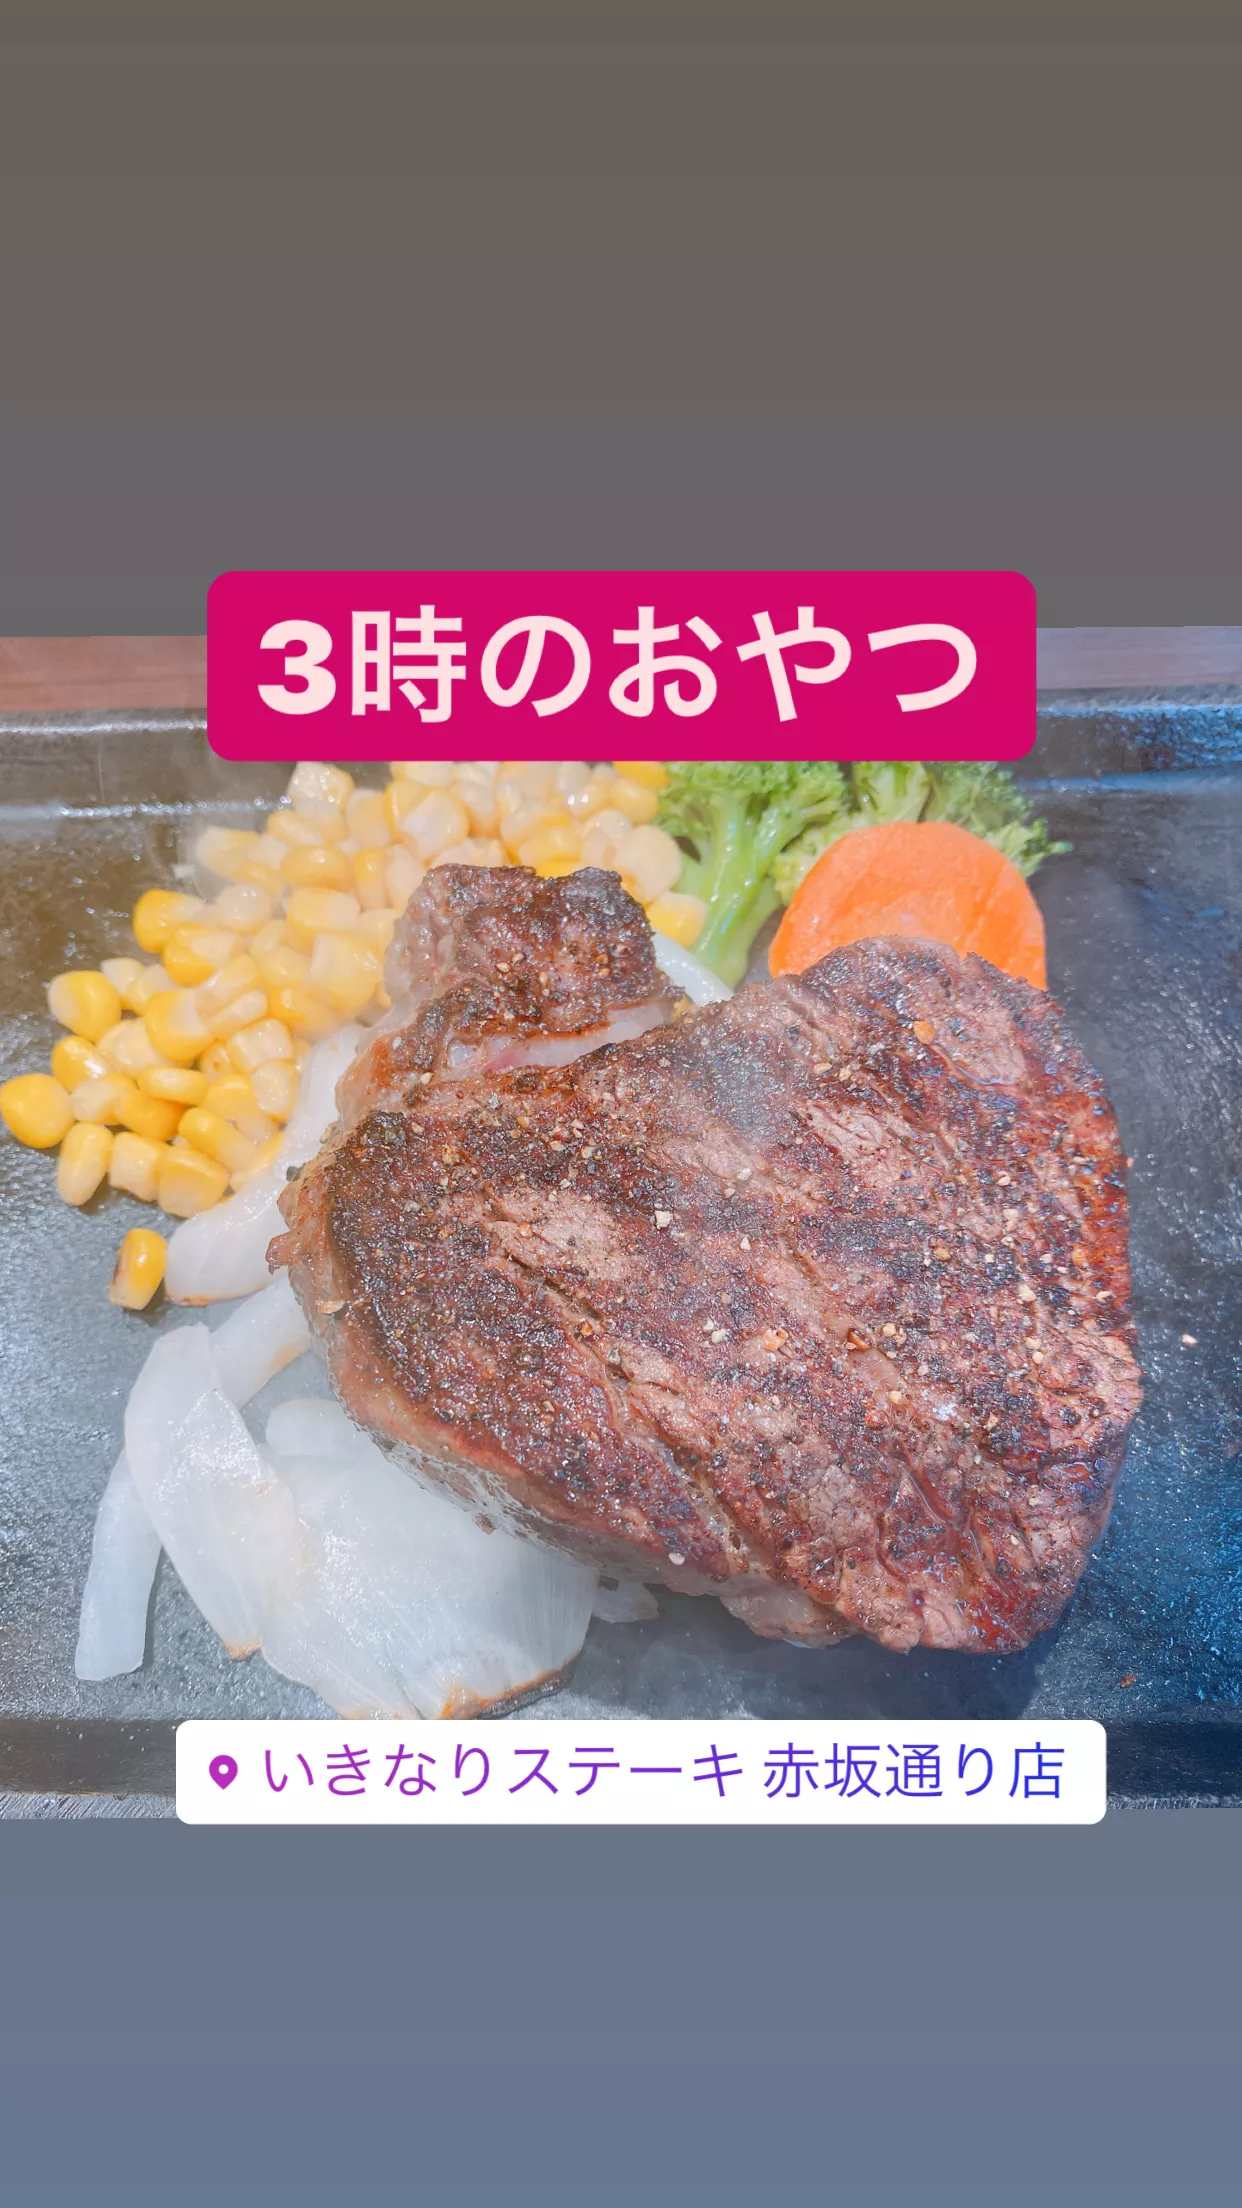 #いきなりステーキ